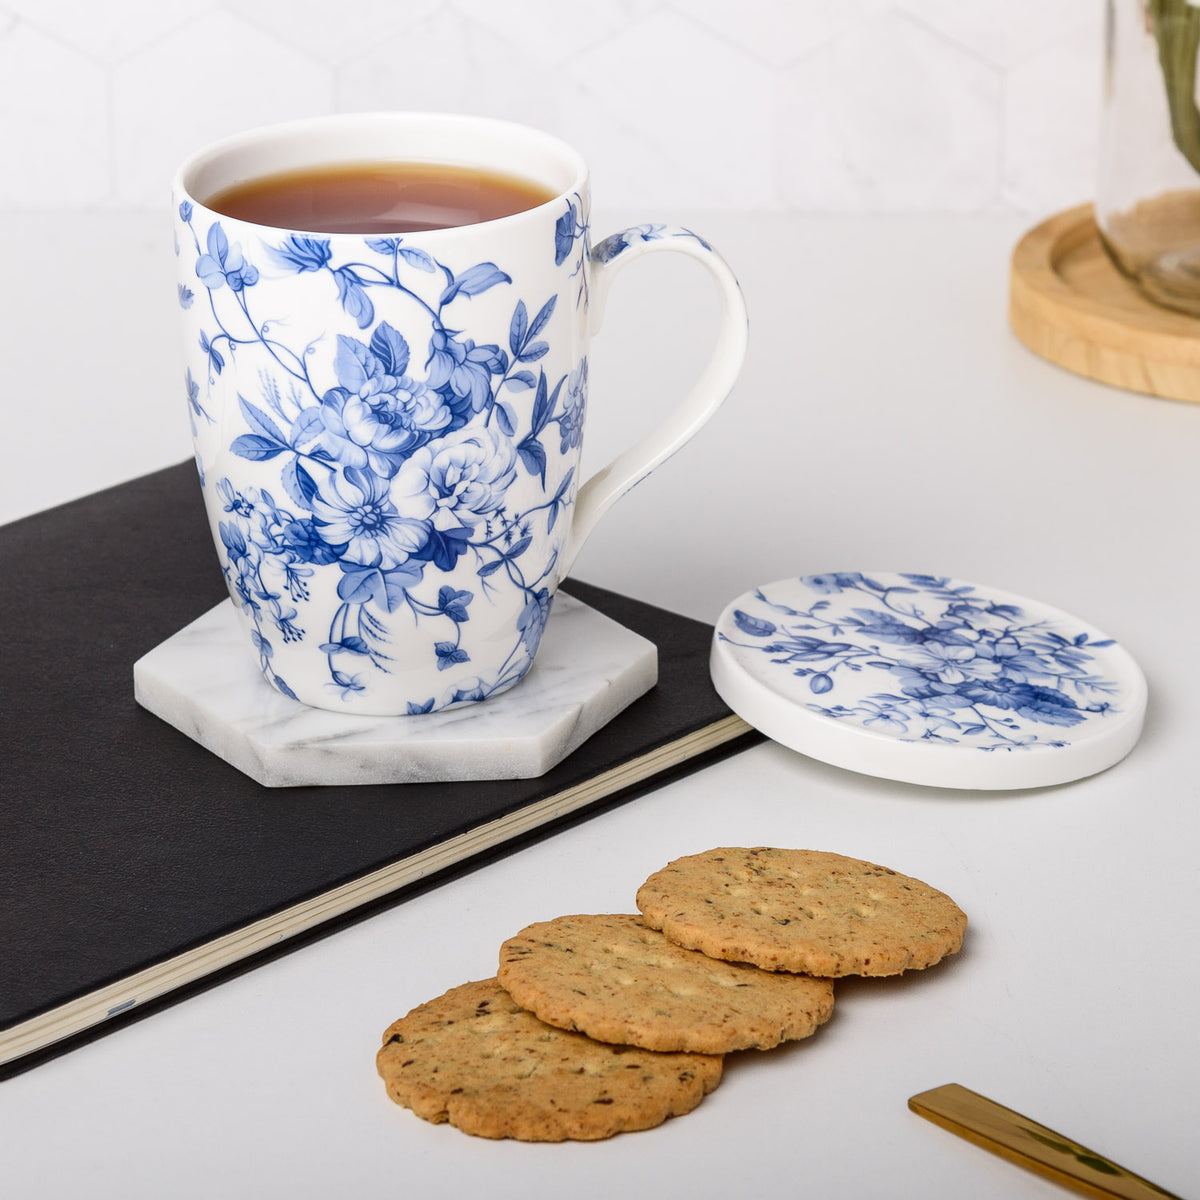  AmorArc Porcelain Tea Mug with Infuser and Lids, 18 Oz